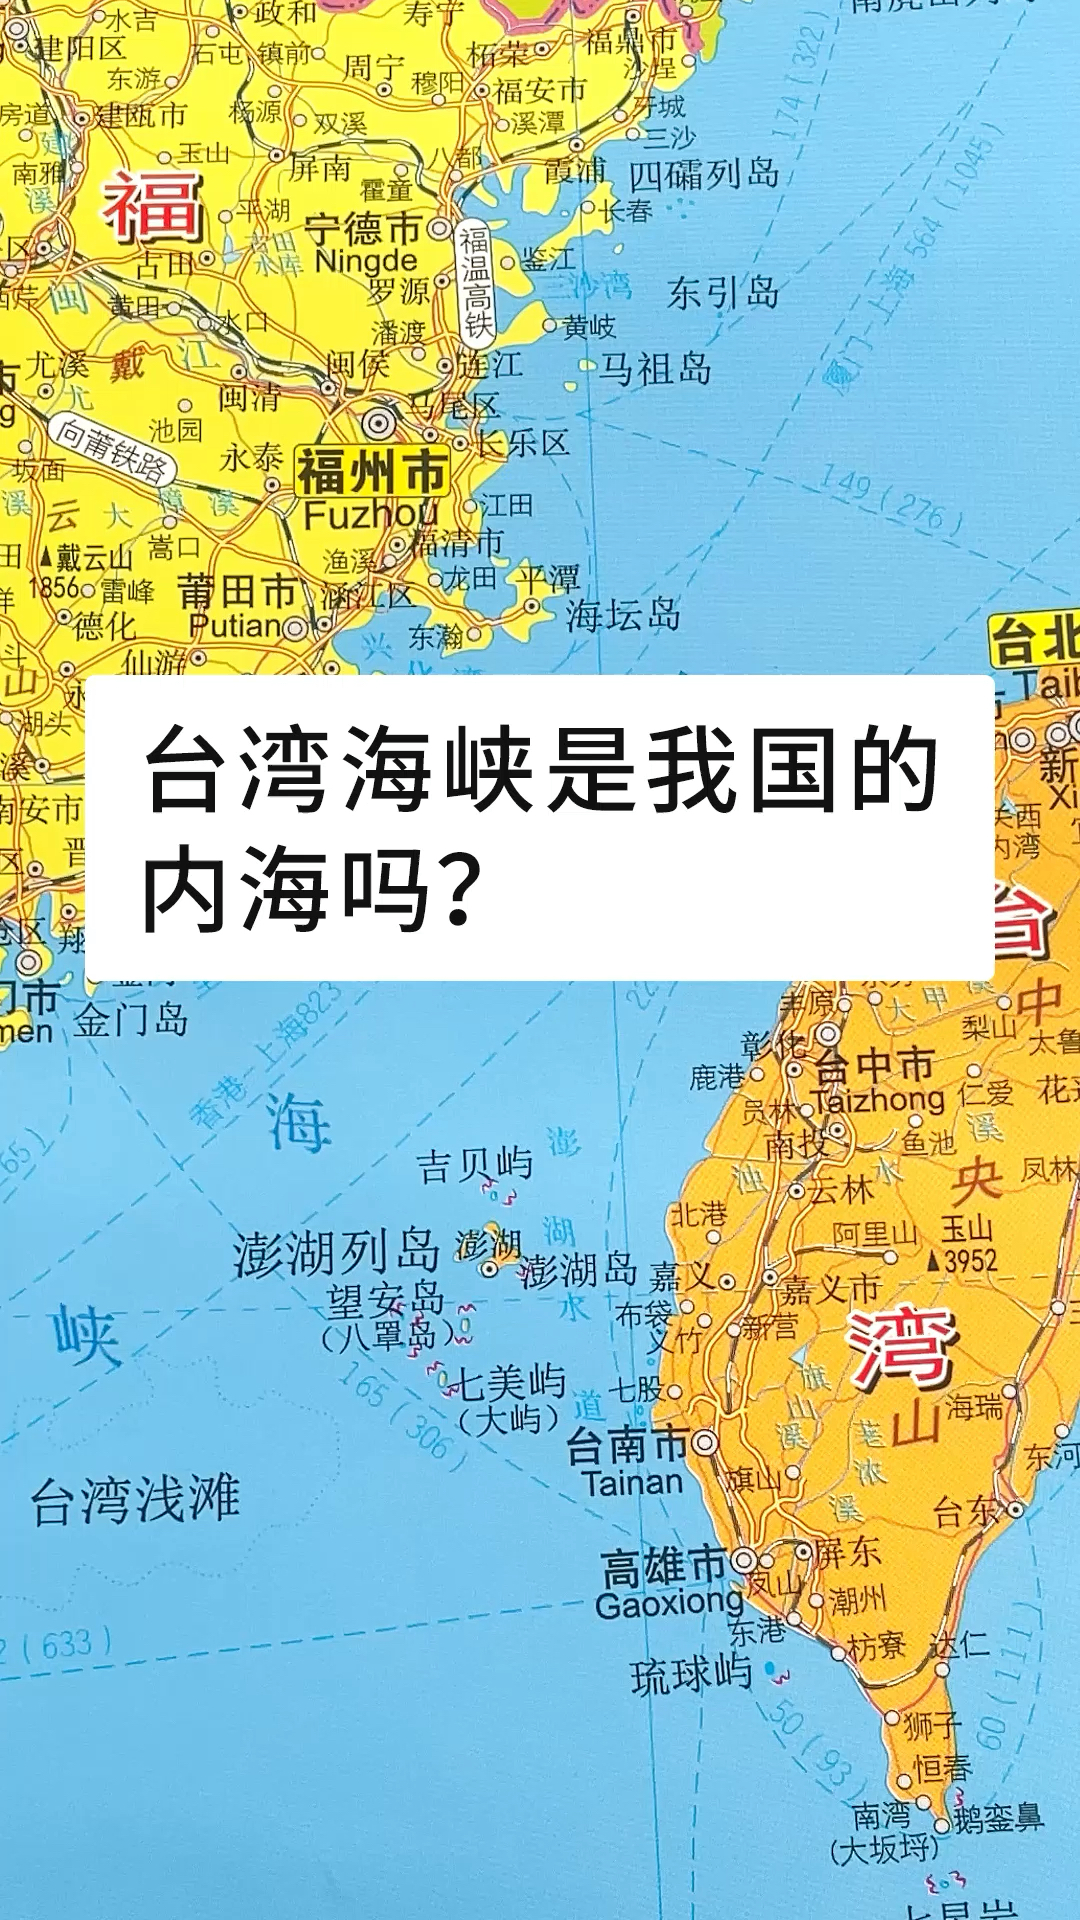 地理知识台湾海峡是我国的内海吗